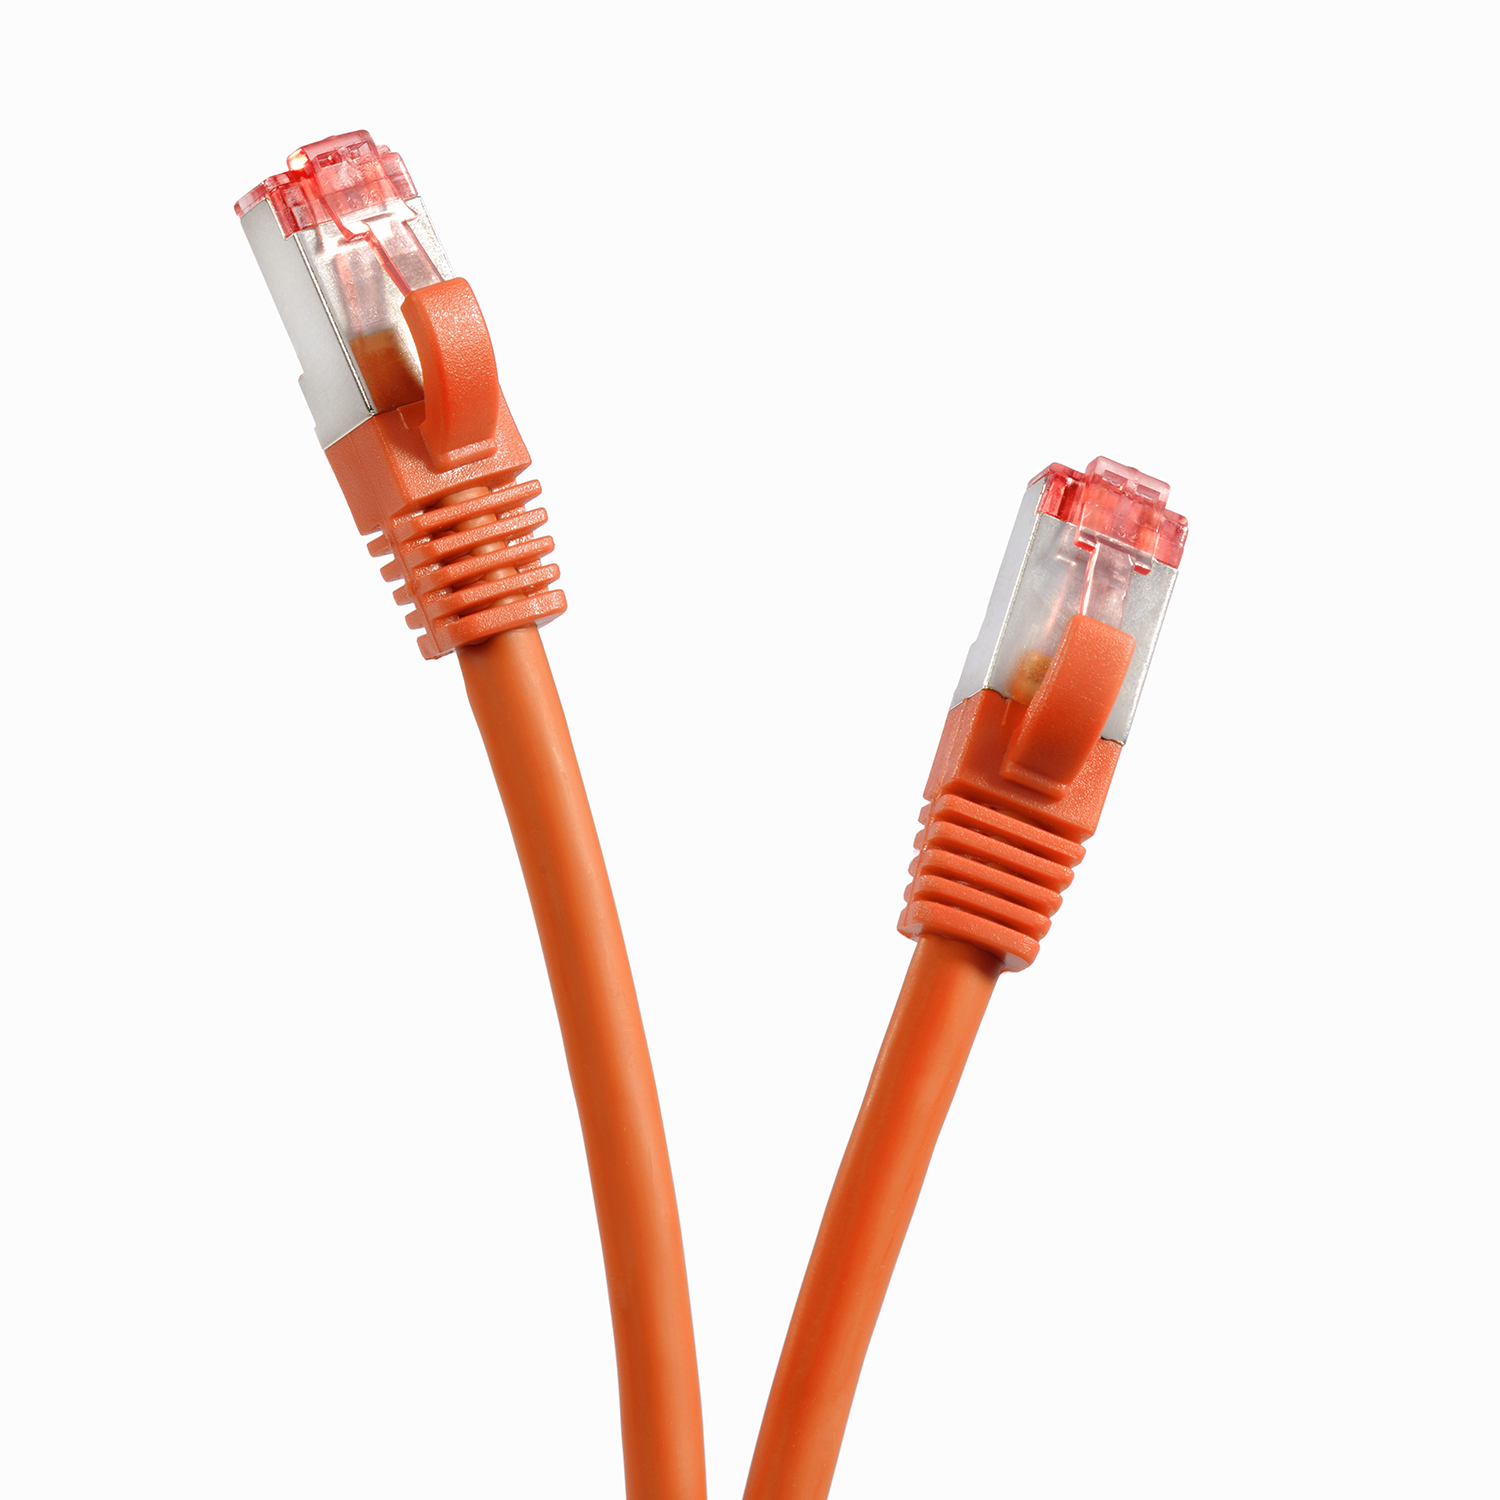 Netzwerkkabel 10m / 1000Mbit, Netzwerkkabel, S/FTP 10 TPFNET orange, Patchkabel m